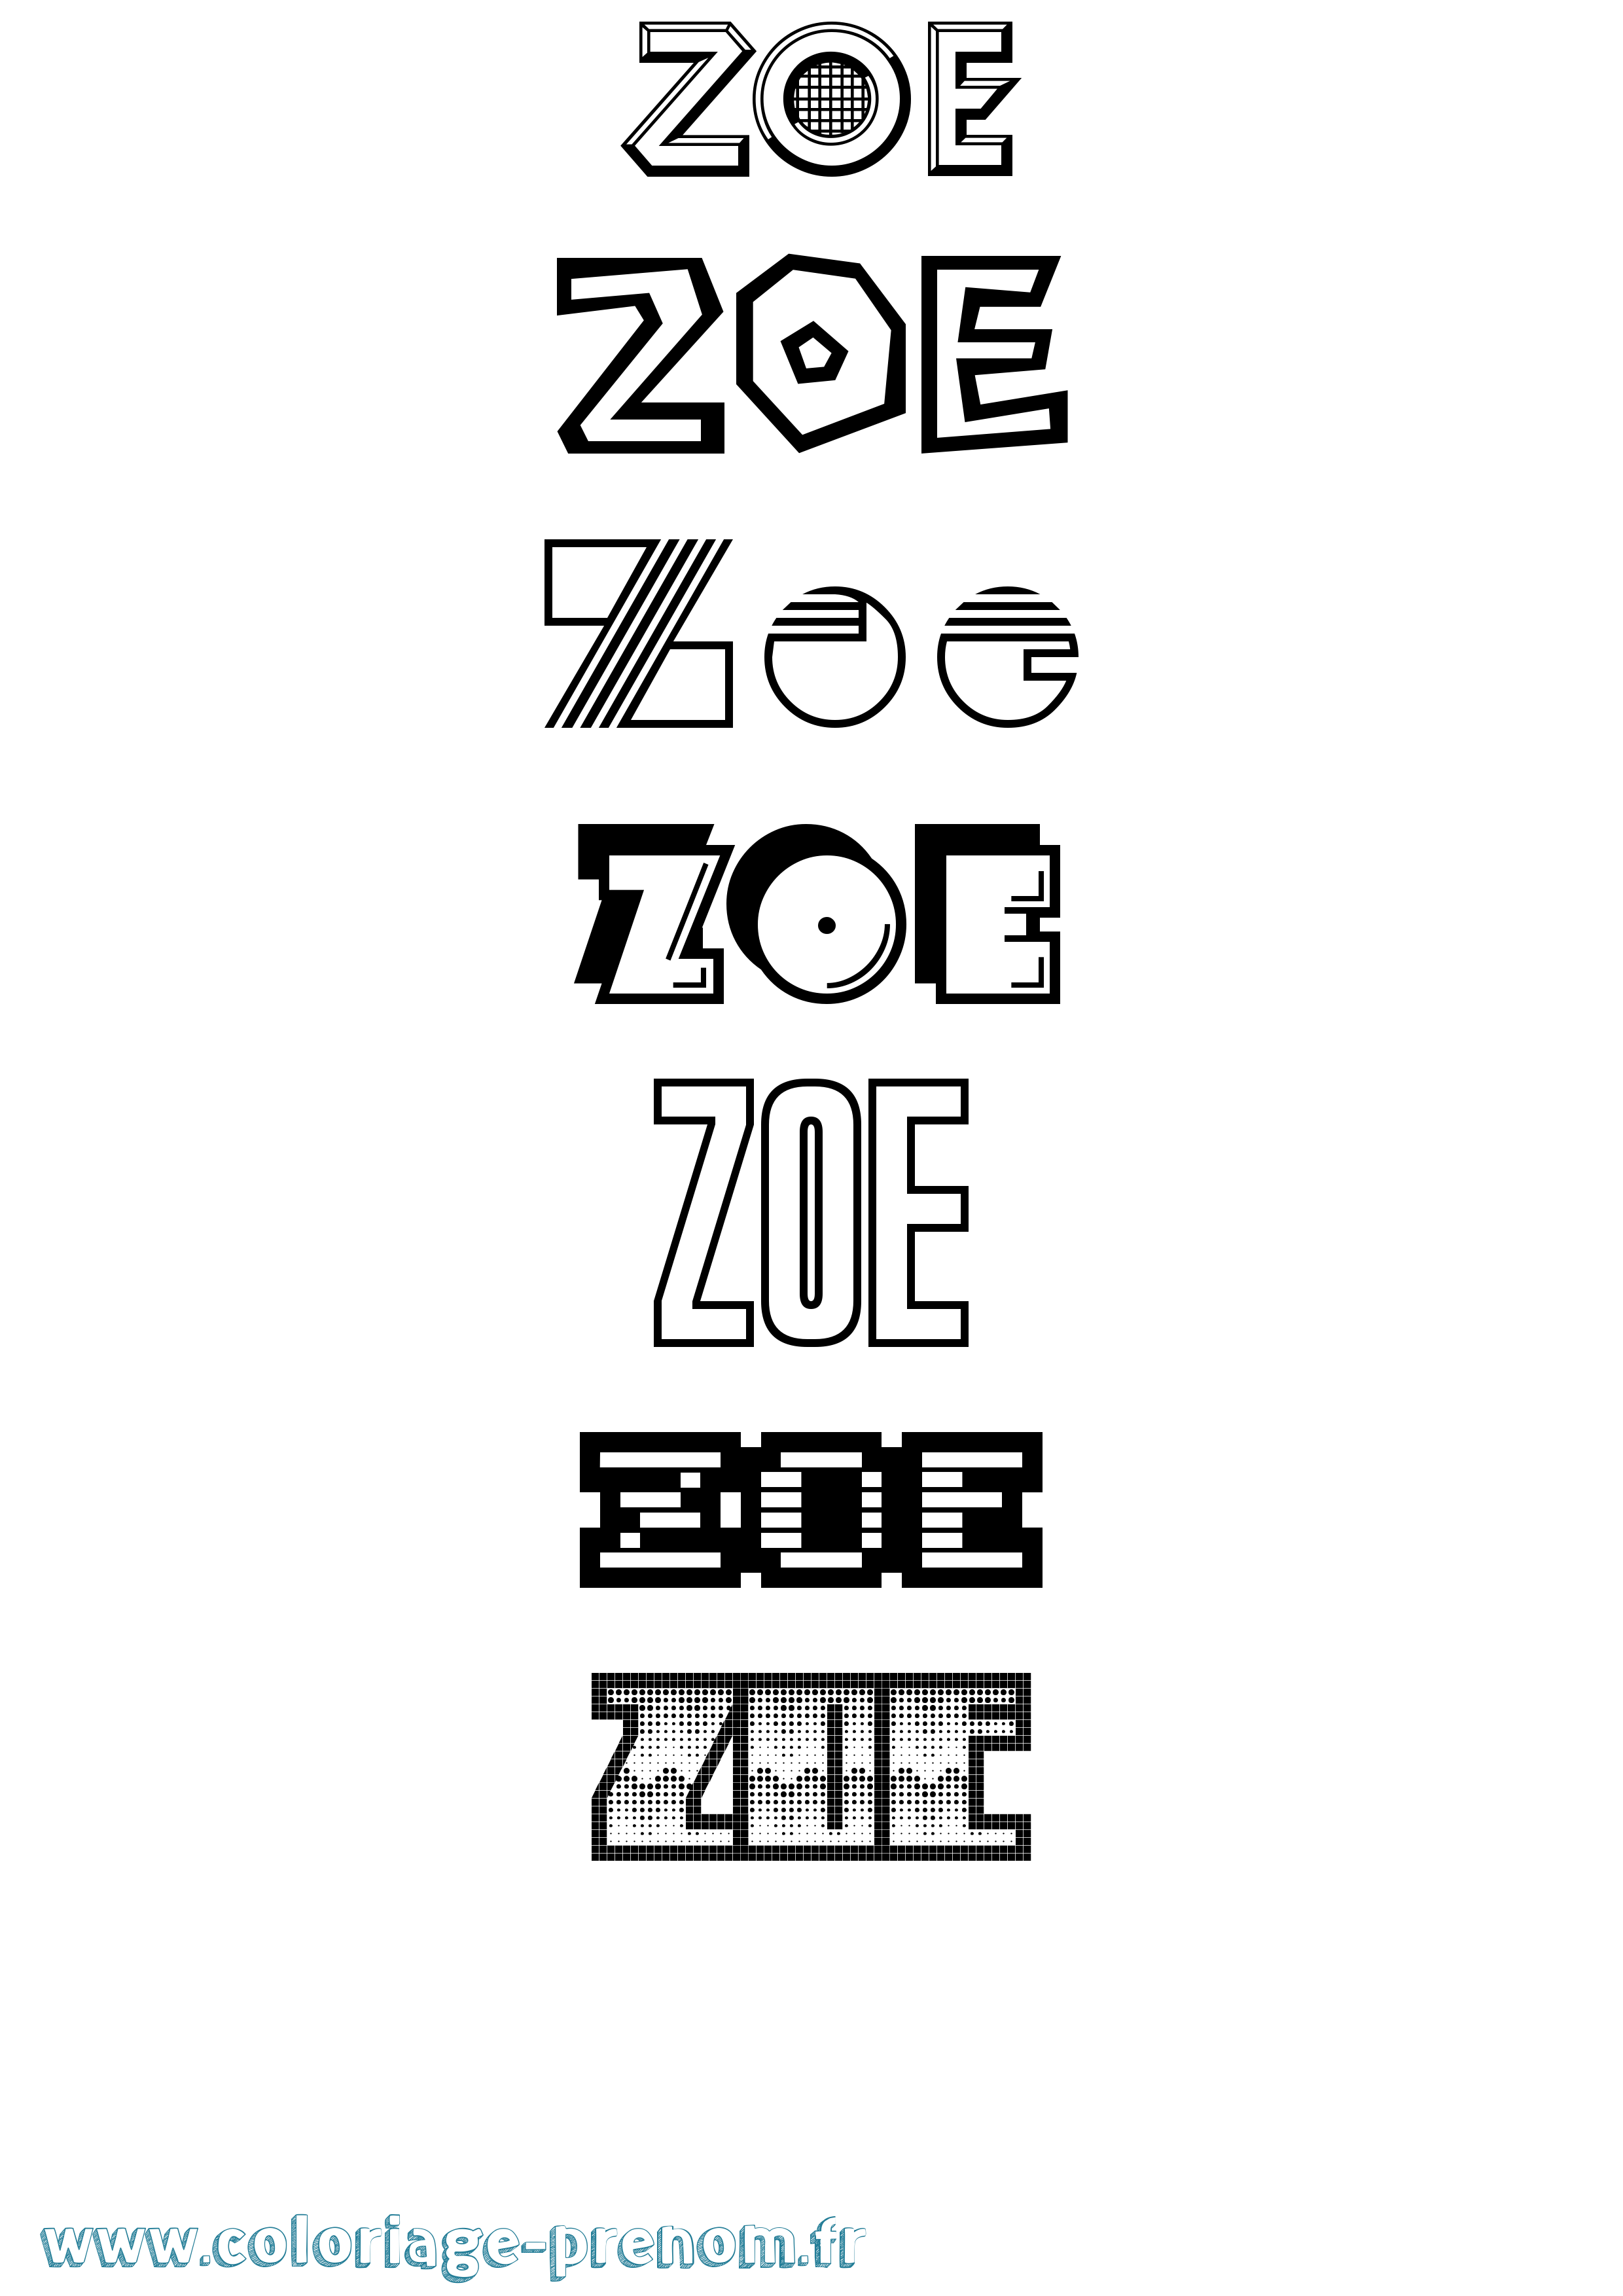 Coloriage prénom Zoe Jeux Vidéos